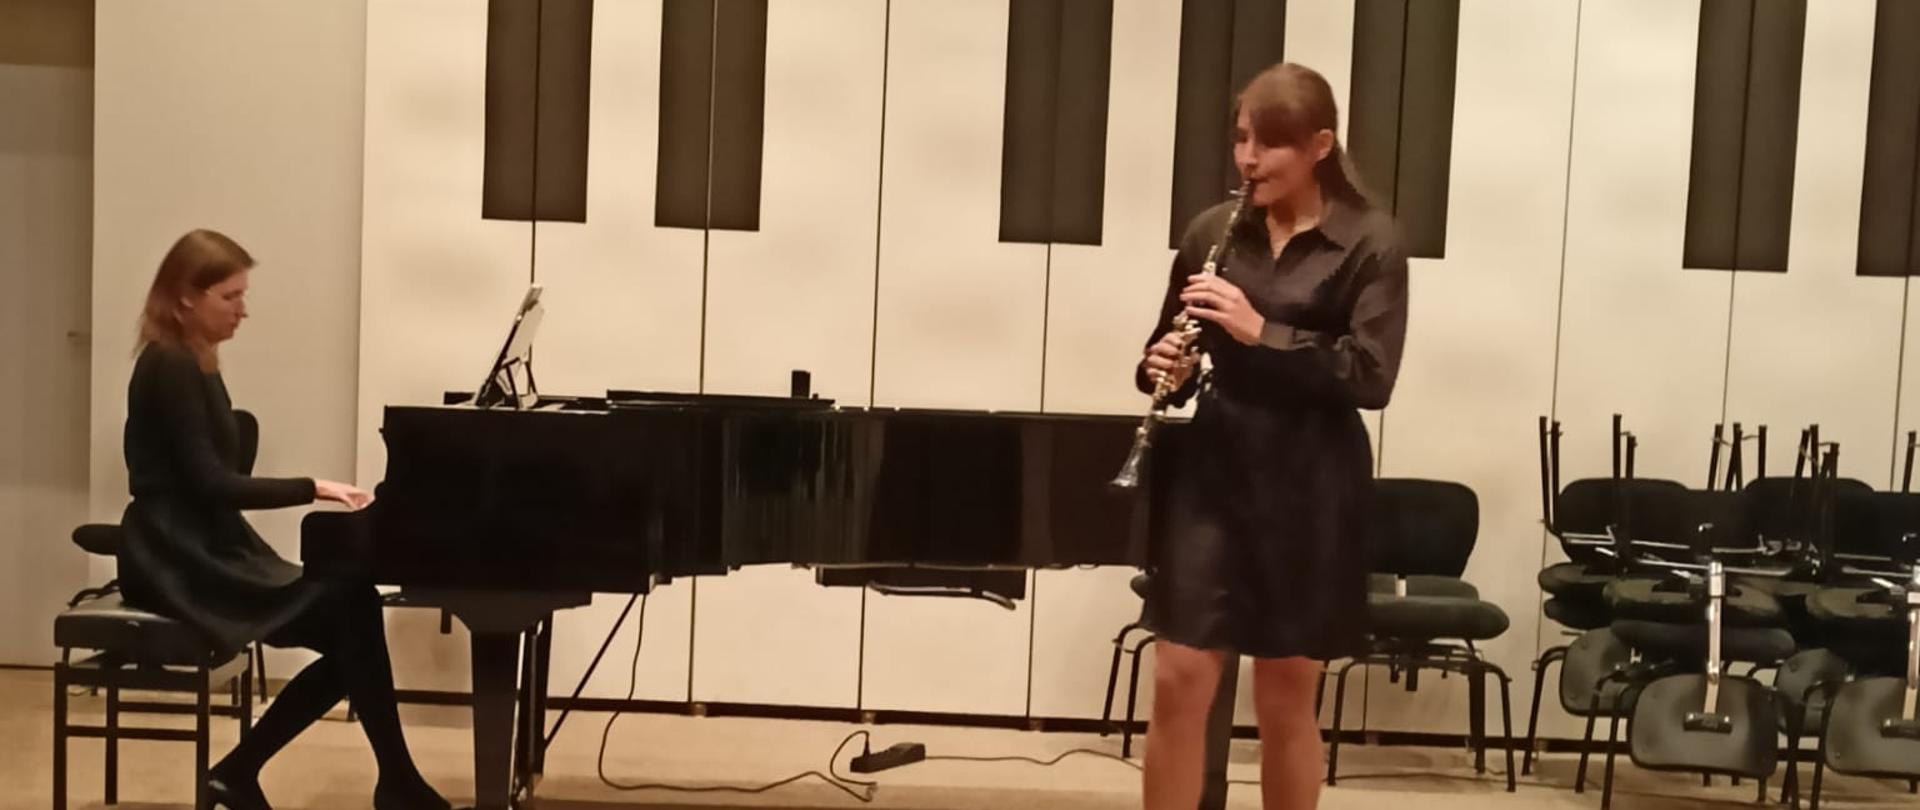 Nastolatka stojąc na estradzie auli PSM gra na klarnecie, za nią na fortepianie gra kobieta, z przodu widać od tyłu fragment widowni z publicznością.